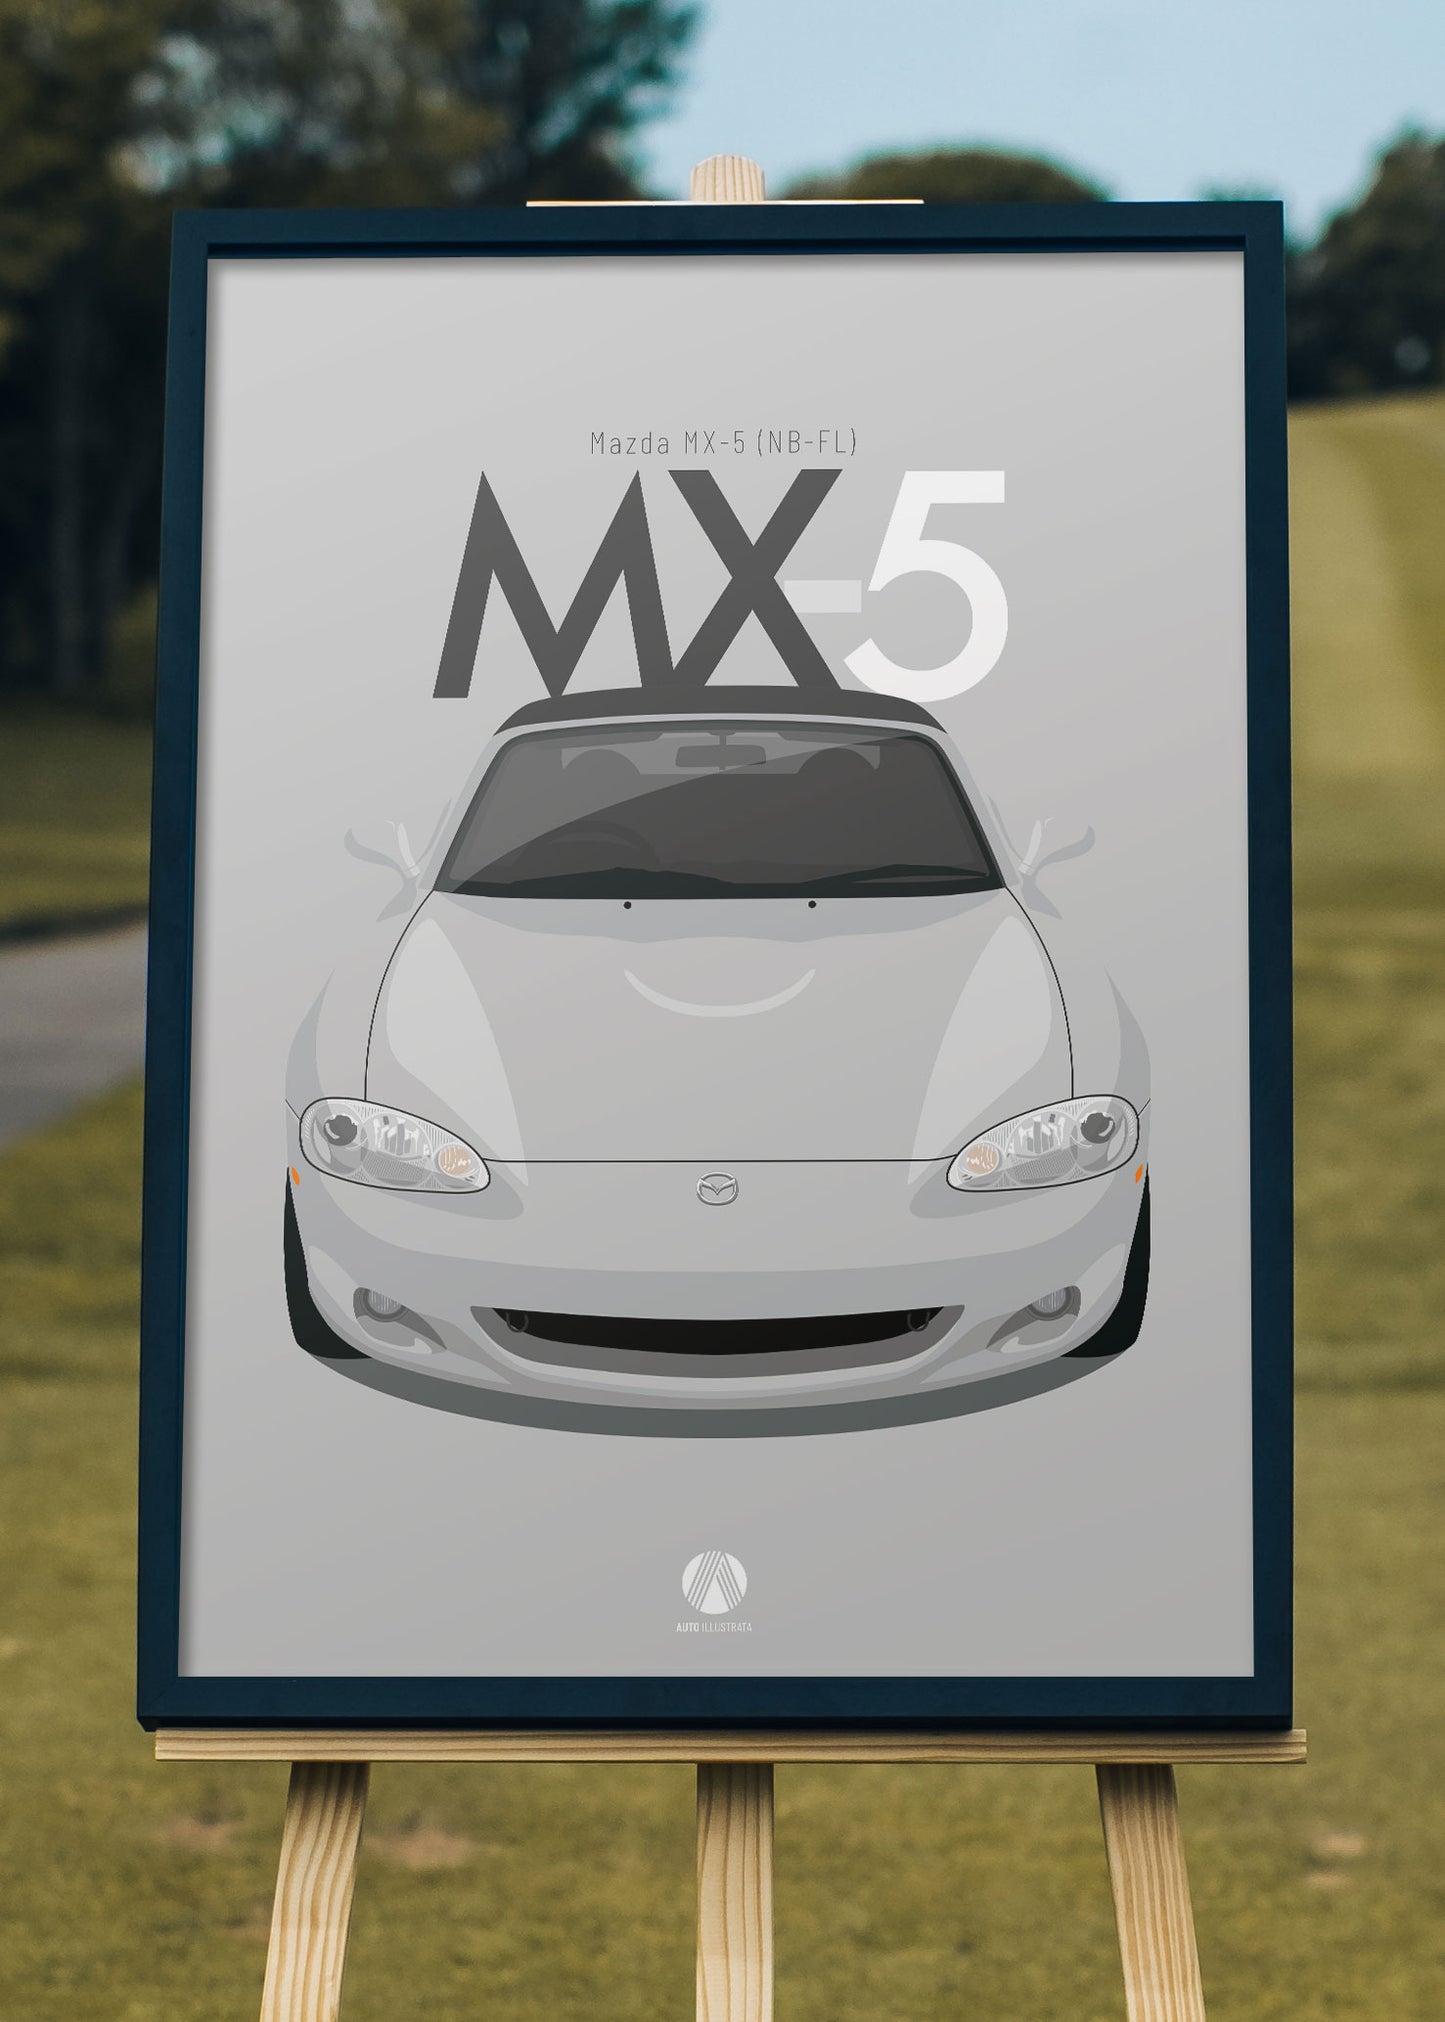 2001 Mazda MX5 (NB-FL) Mk2.5 - Silver - poster print